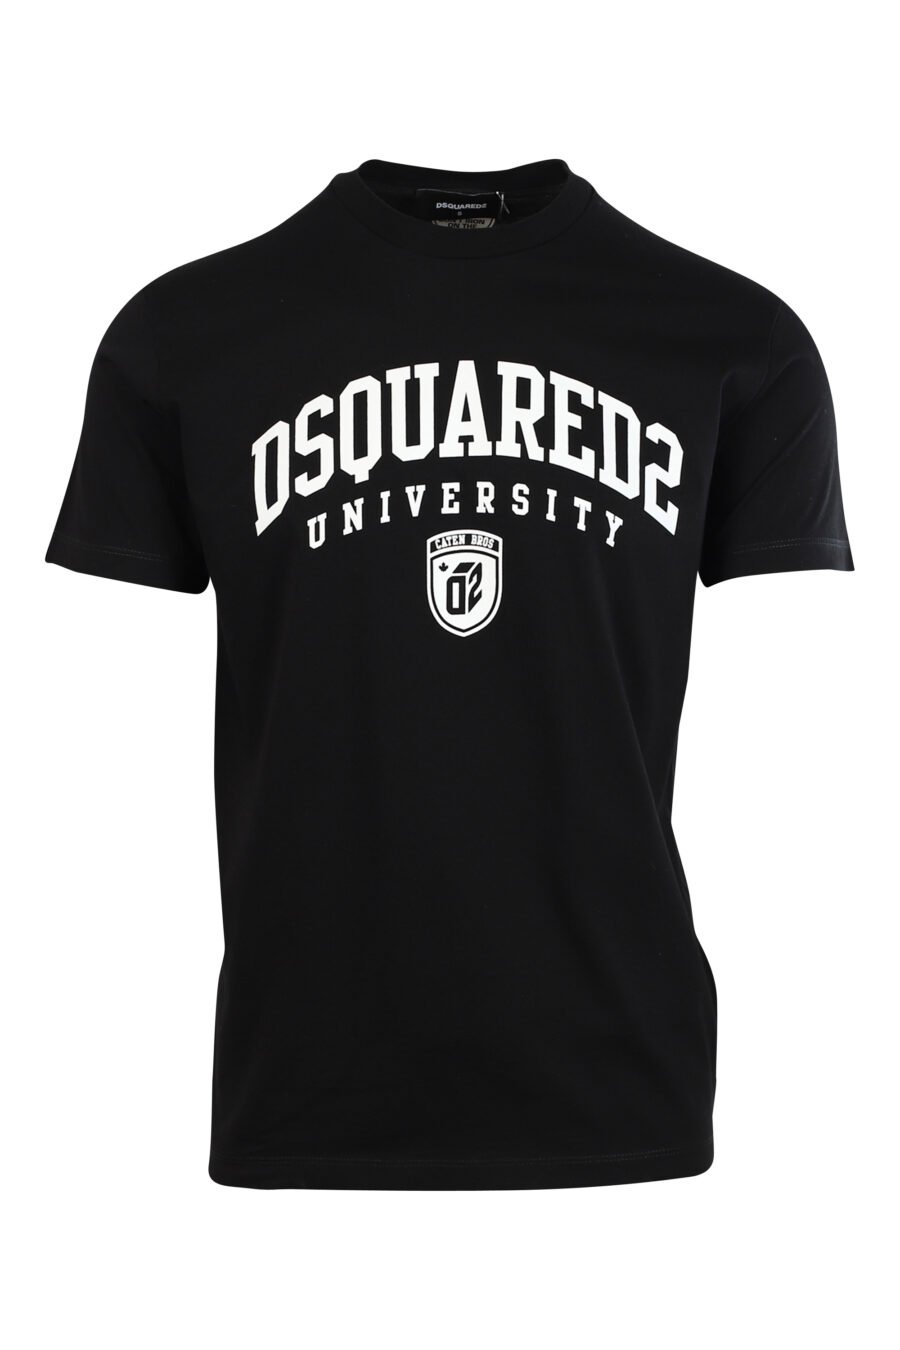 Black T-shirt with white "university" maxilogo - 8052134945810